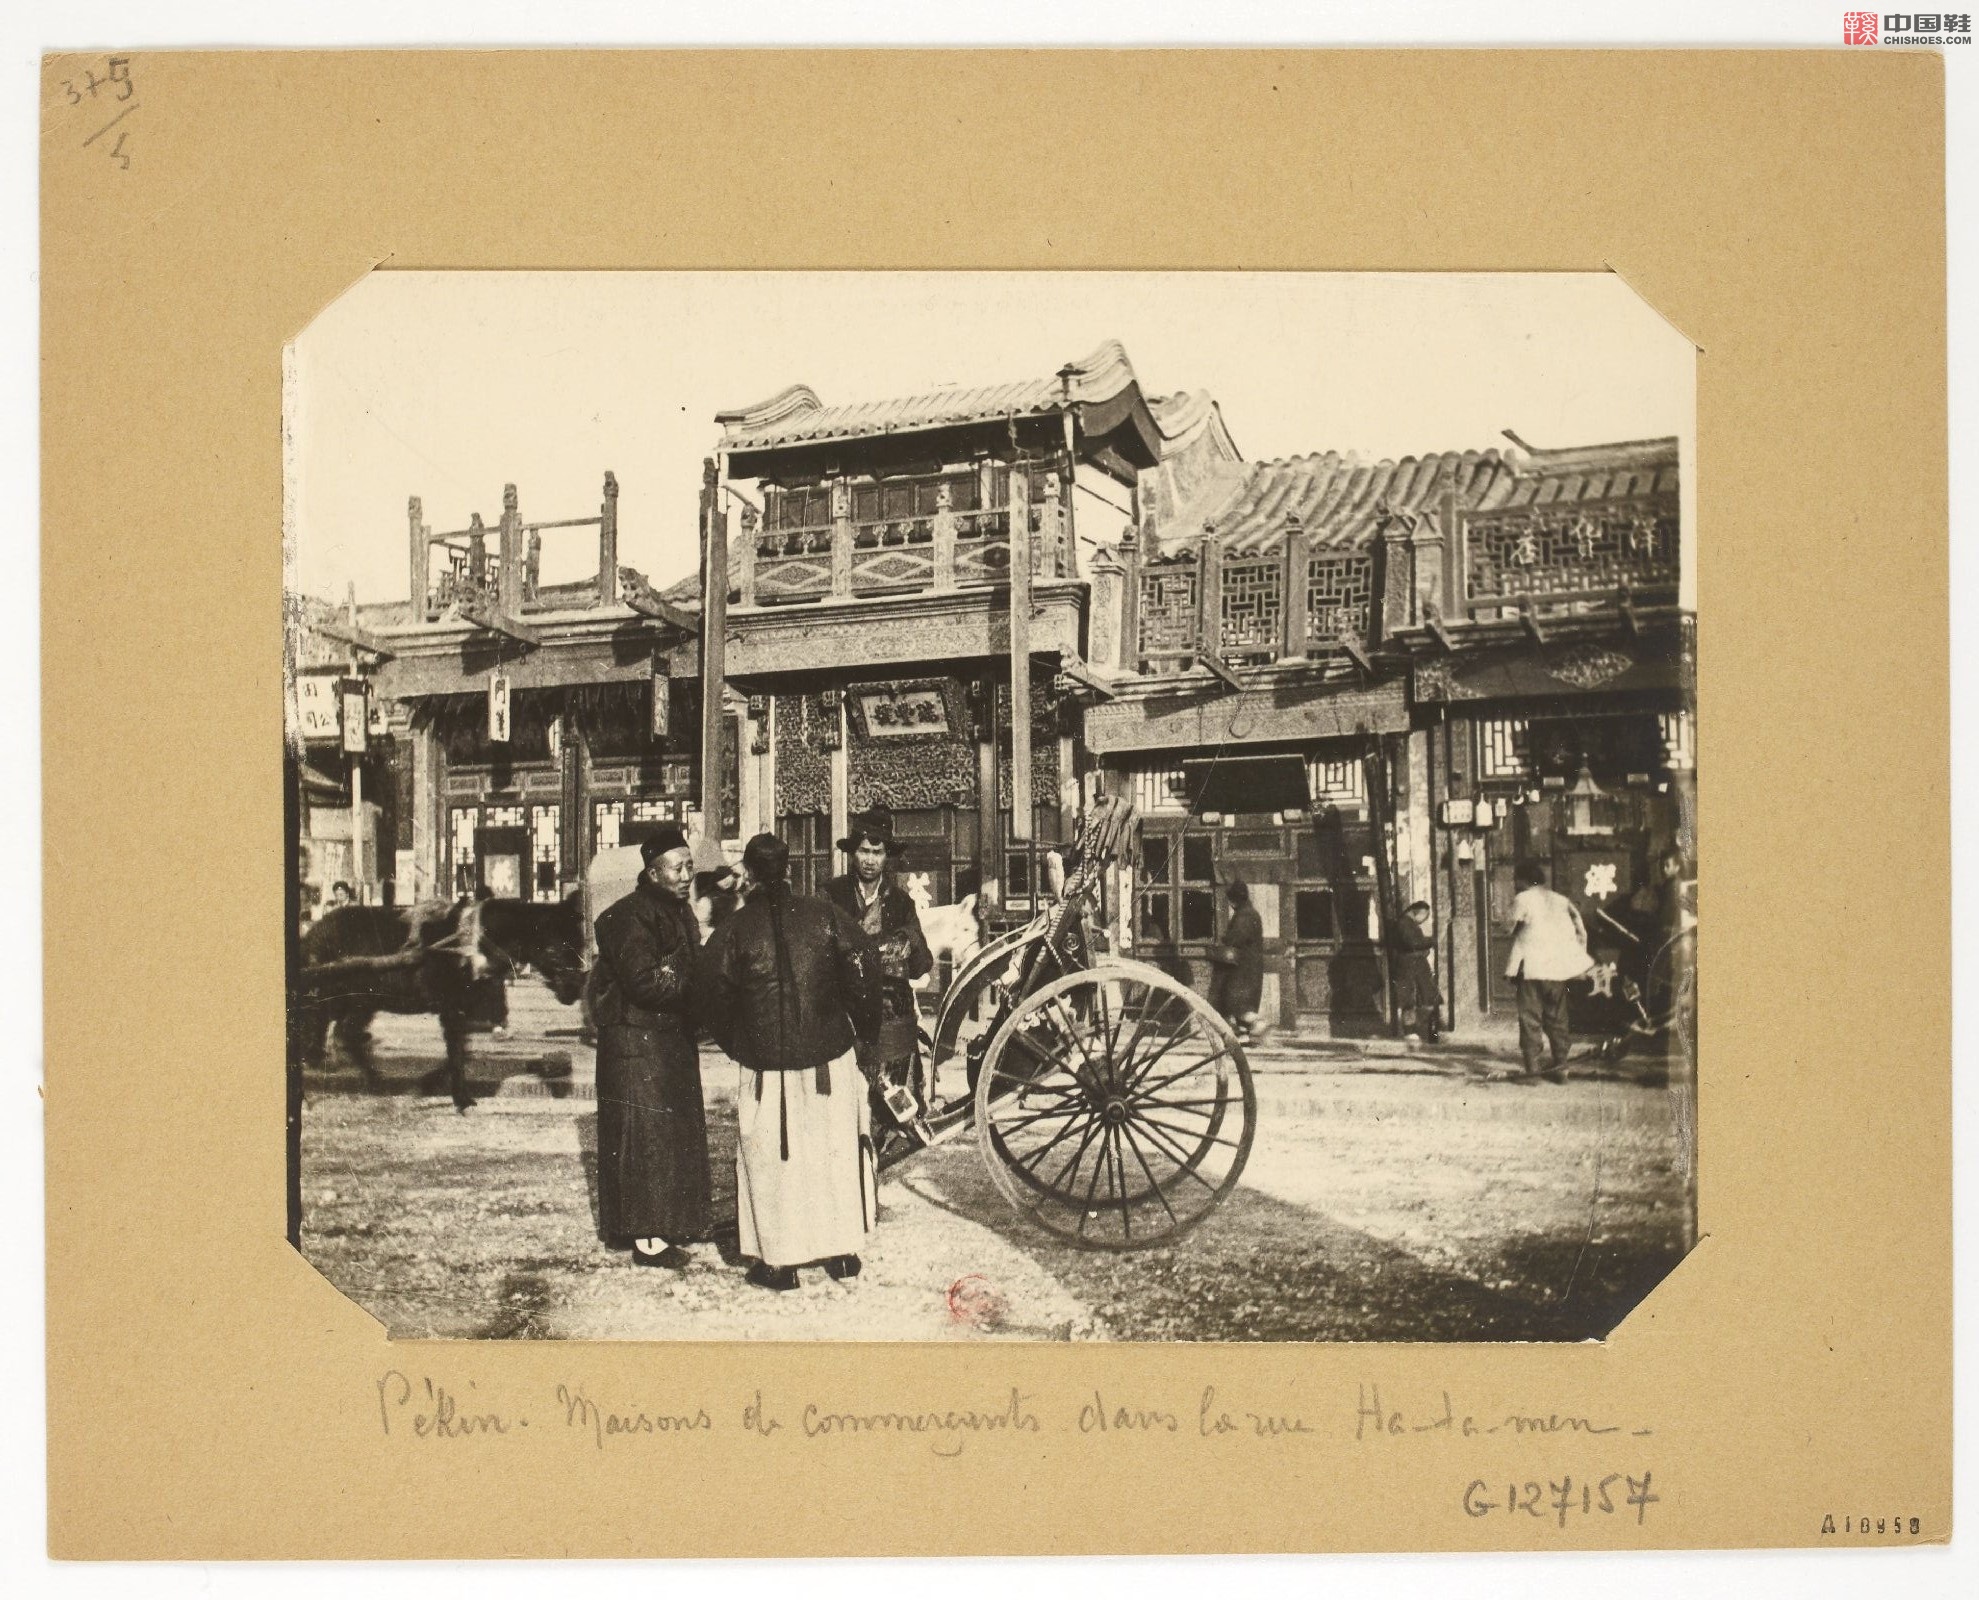 拉里贝的中国影像记录.415幅.By Firmin Laribe.1900-1910年_Page_166.jpg